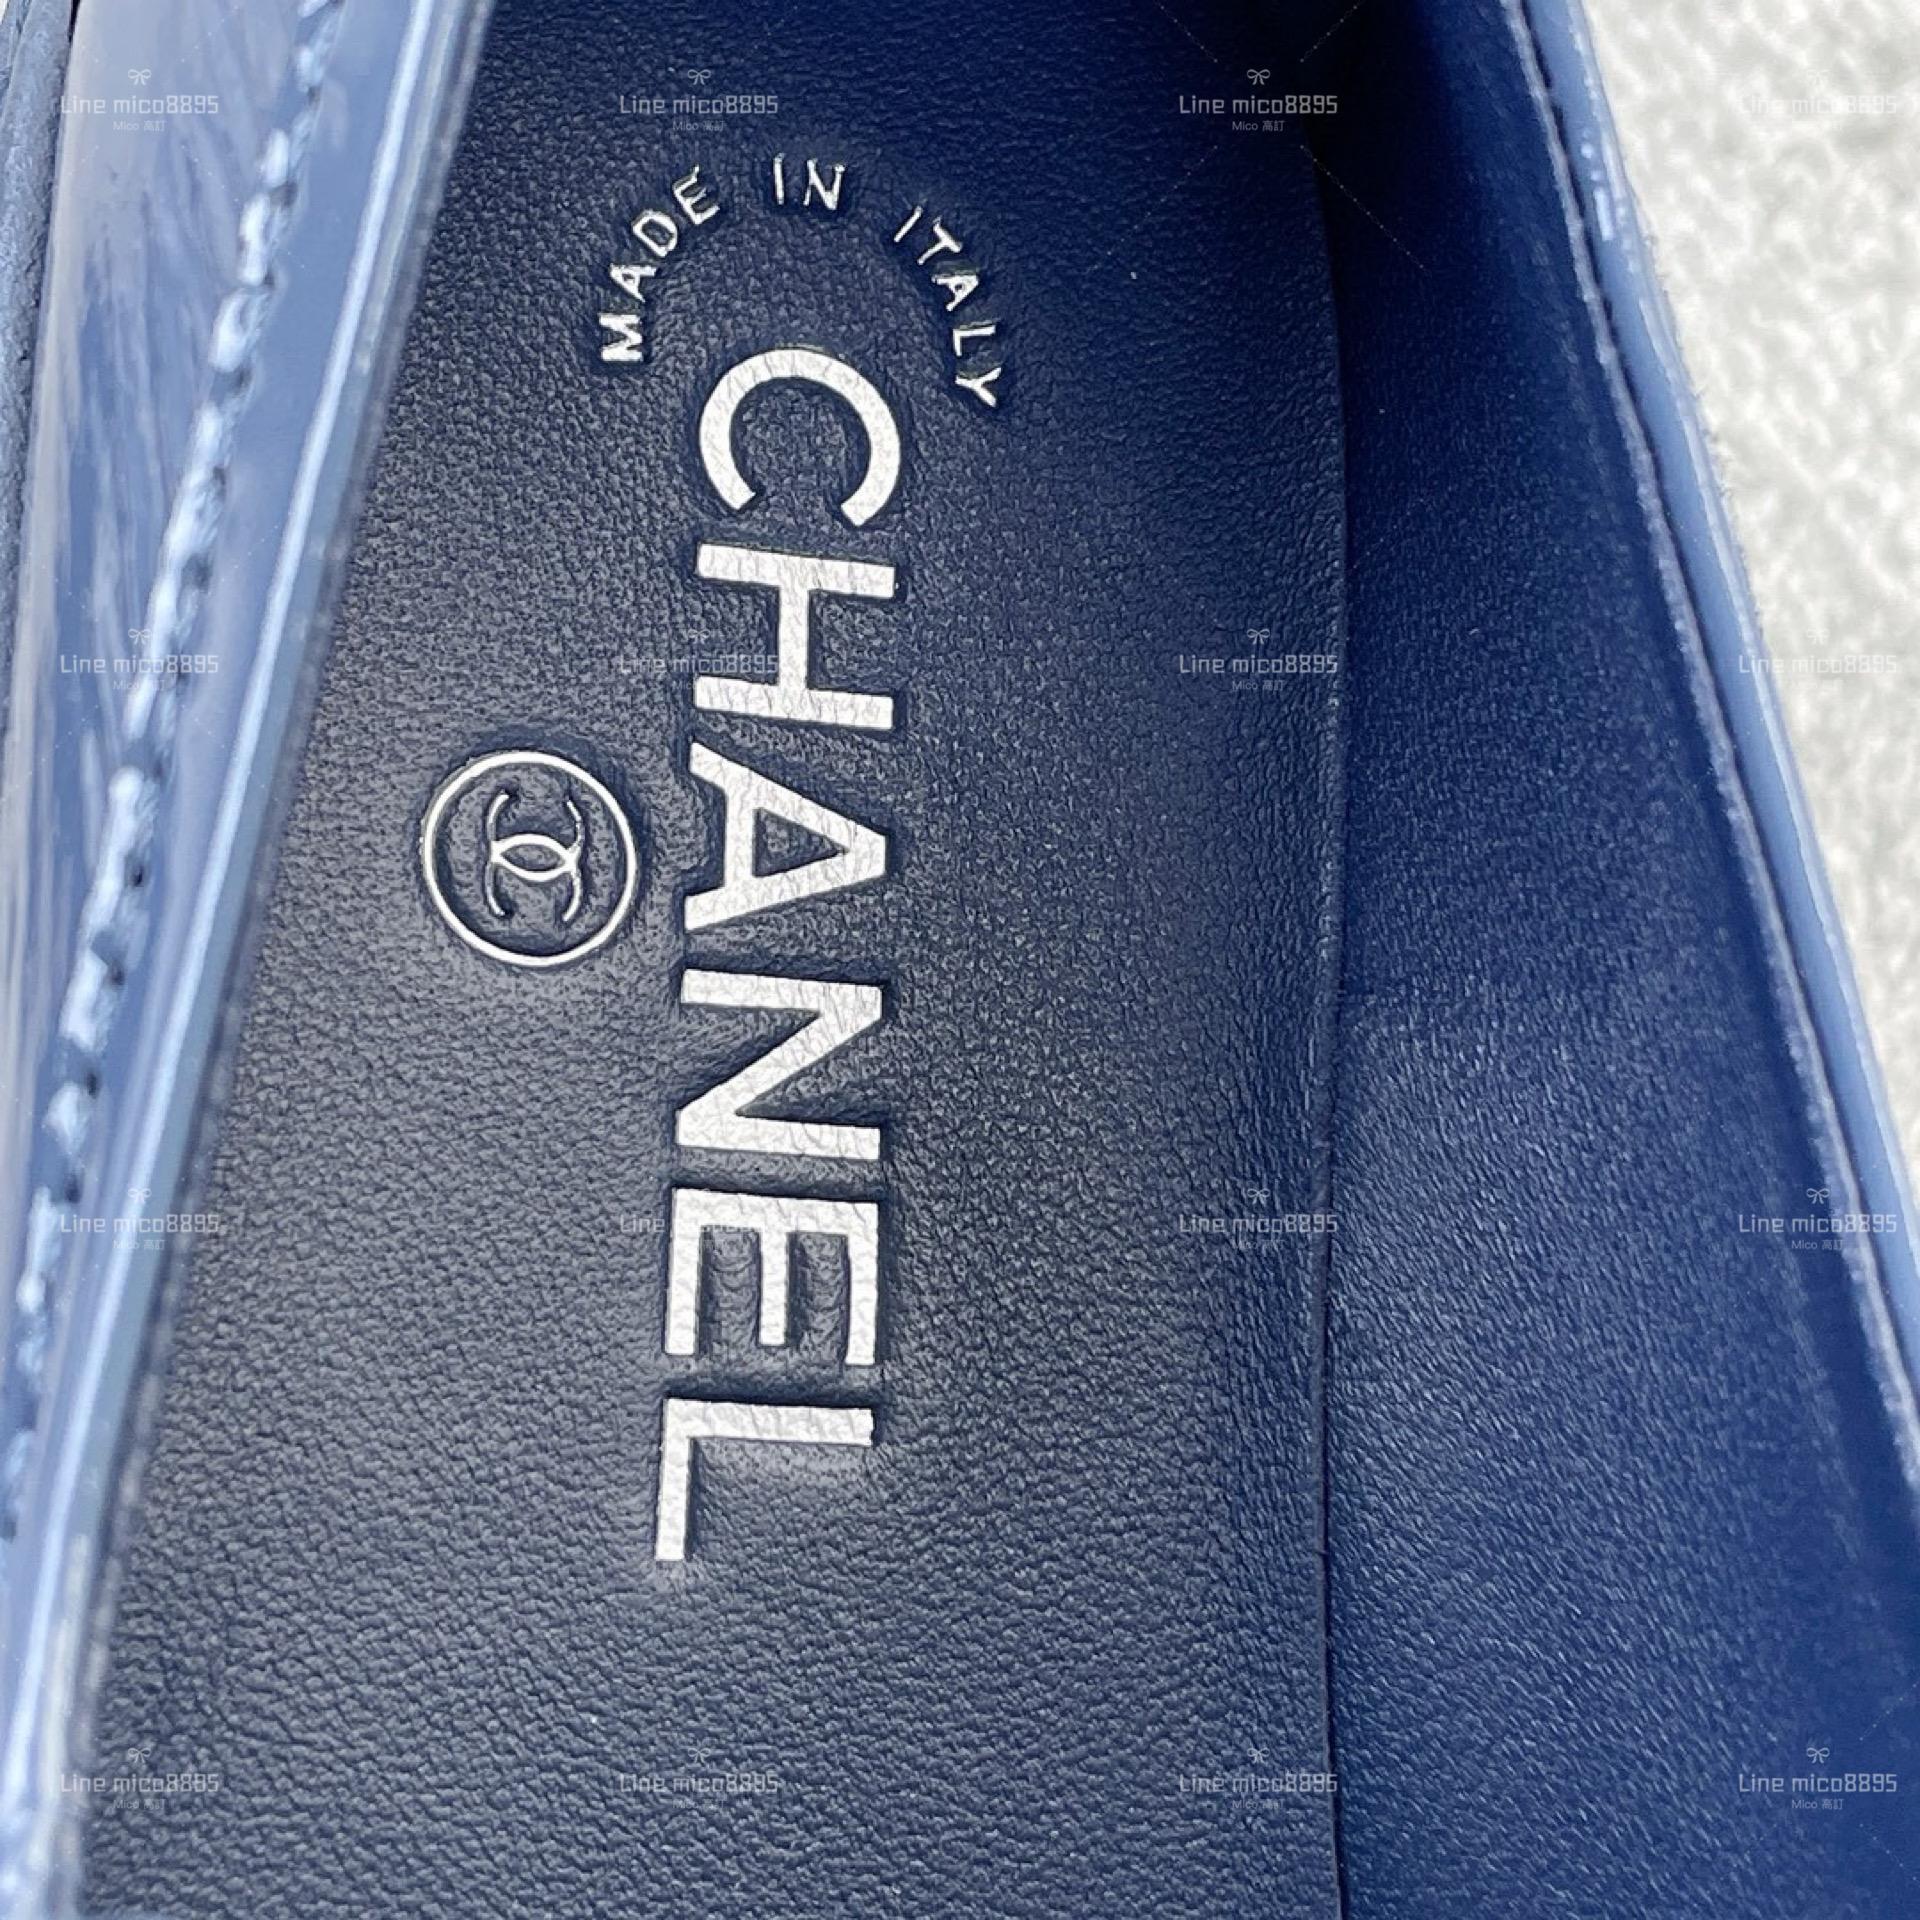 Chanel 經典書包釦 菱格樂福鞋 皺羊皮 土耳其藍色 銀釦 35-40